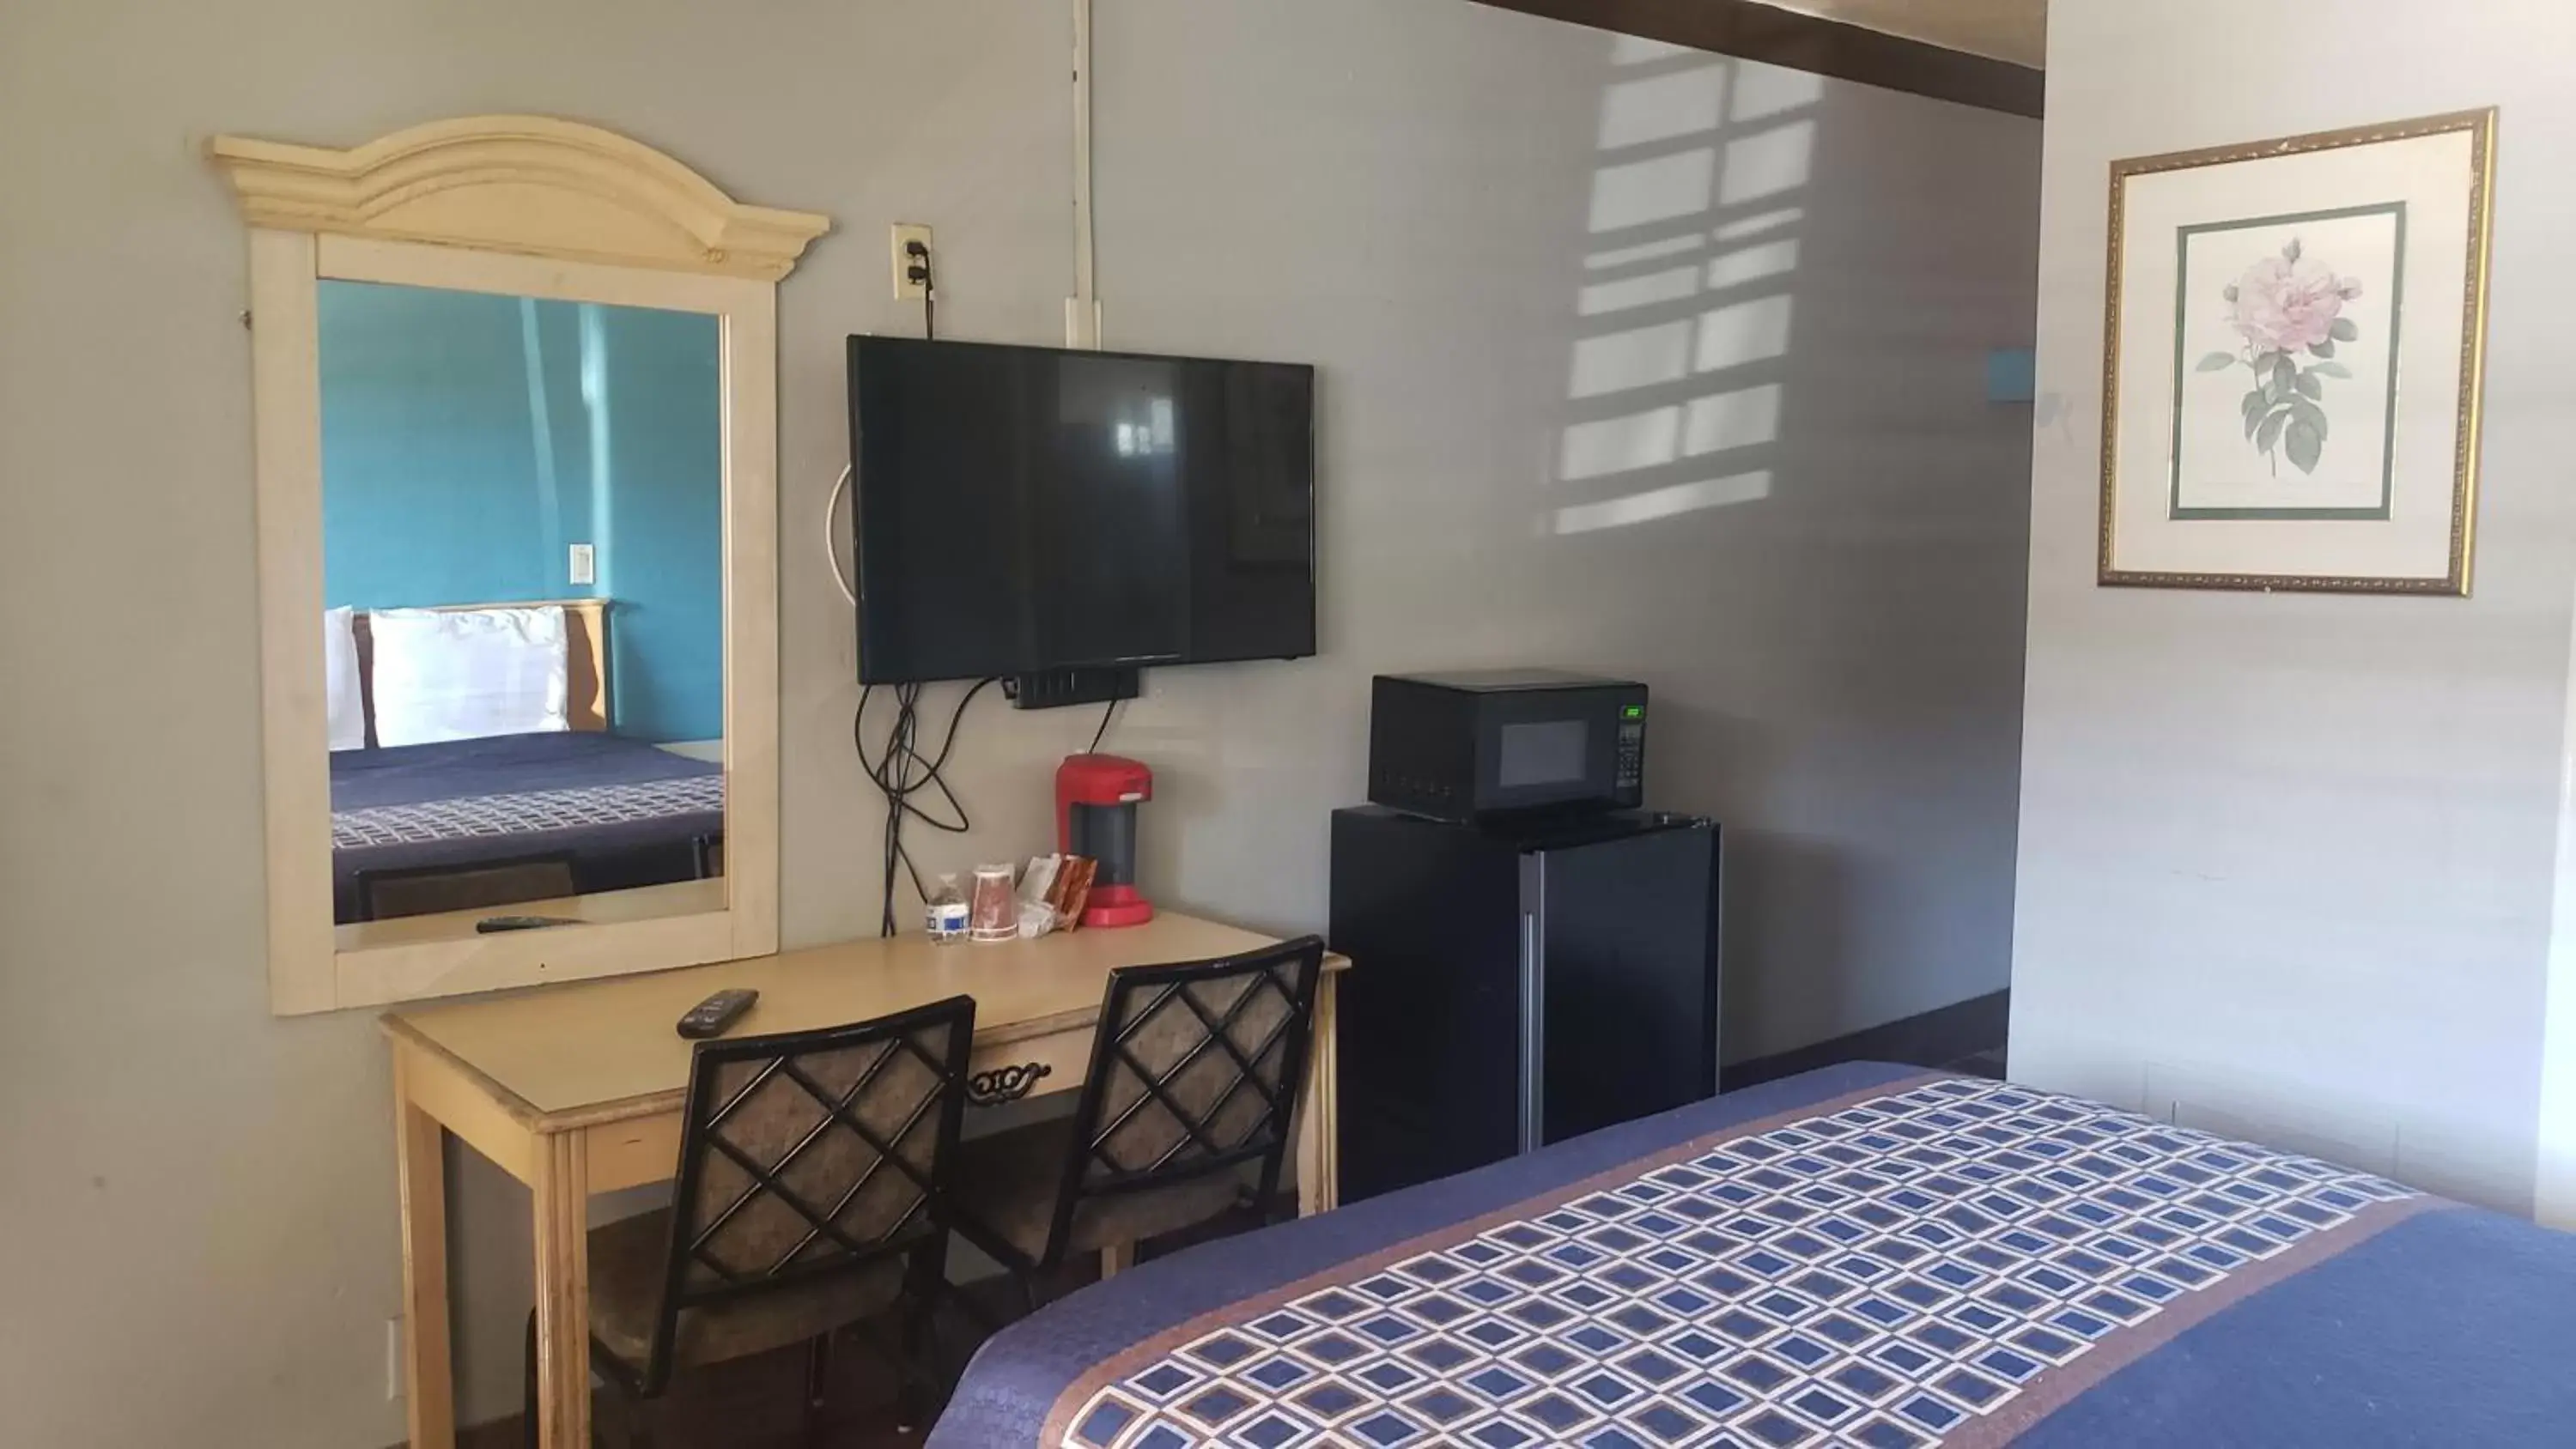 Bedroom, TV/Entertainment Center in Eagle Inn Motel